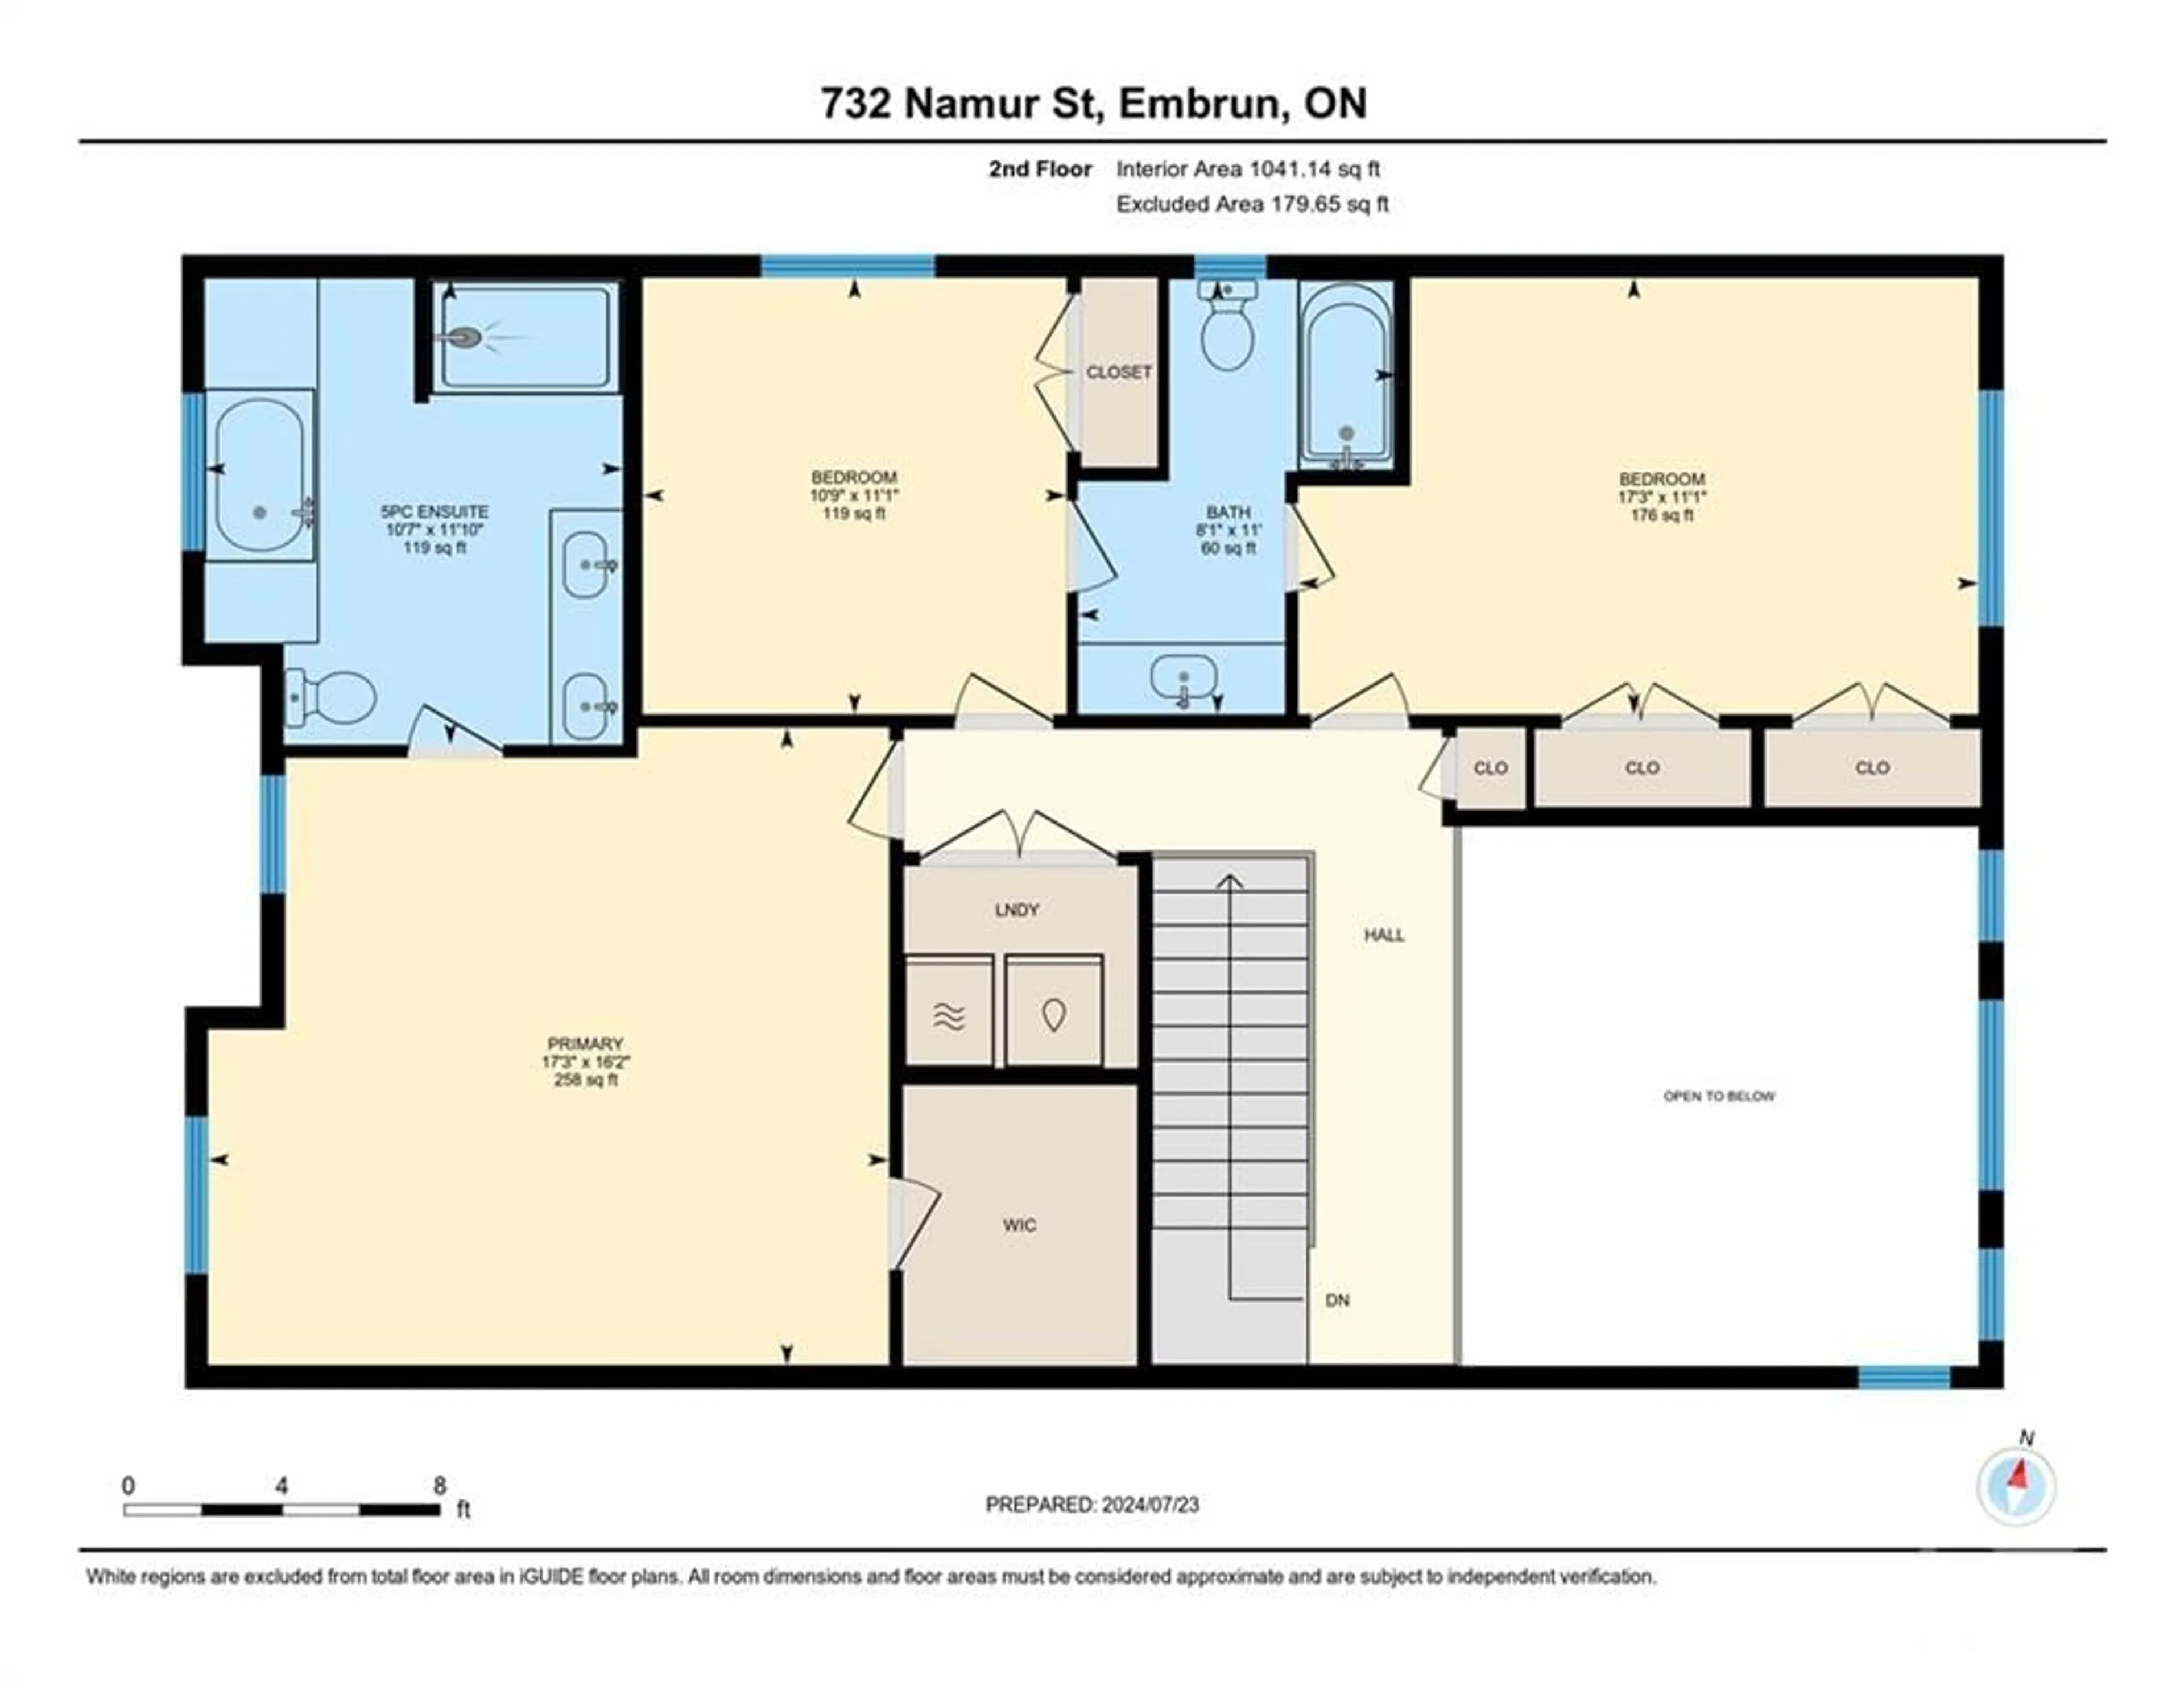 Floor plan for 732 NAMUR St, Embrun Ontario K0A 1W0